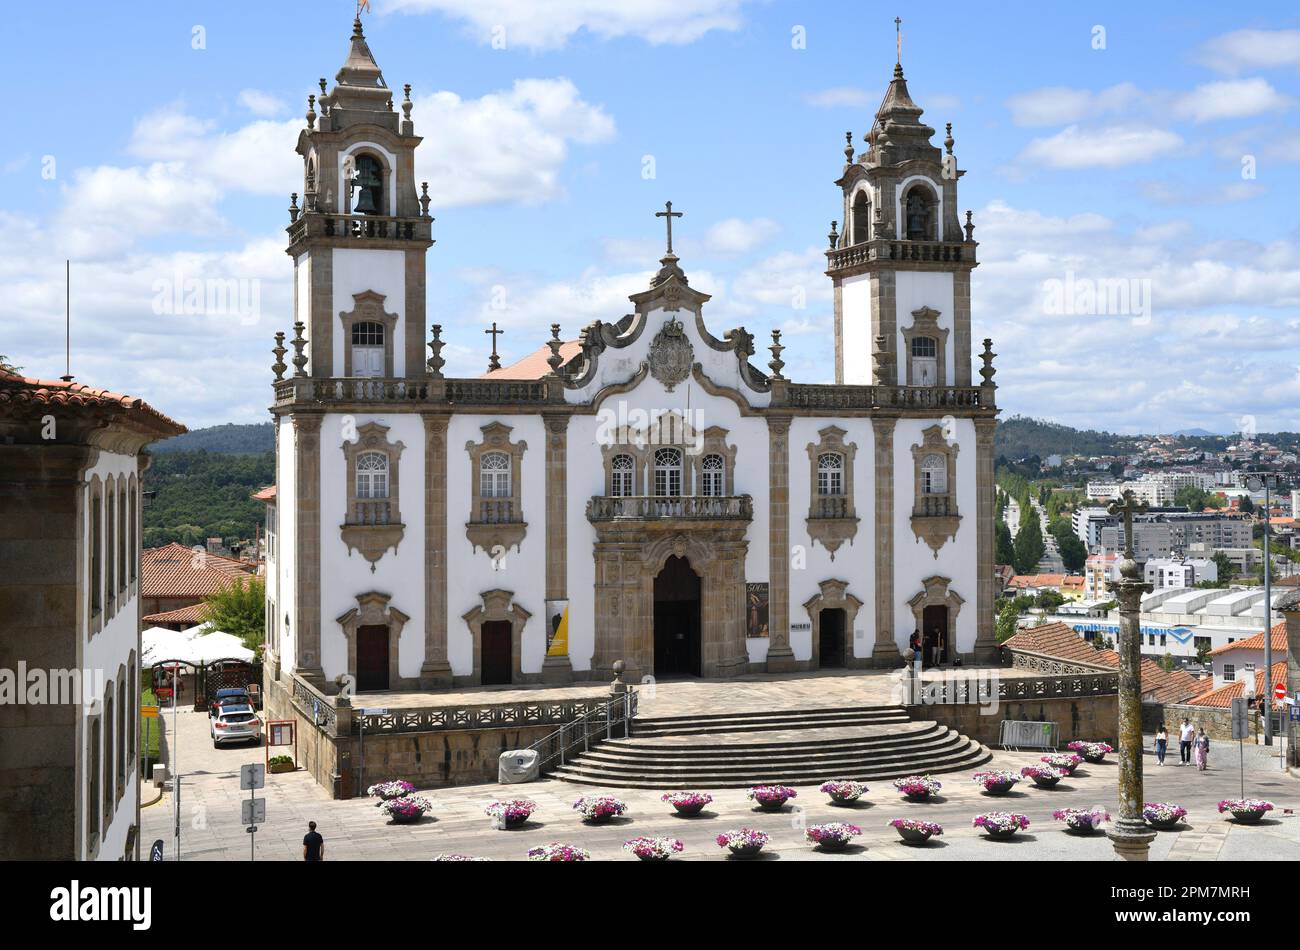 Viseu, Igreja da Misericordia (rococo 18th century). Centro, Portugal. Stock Photo